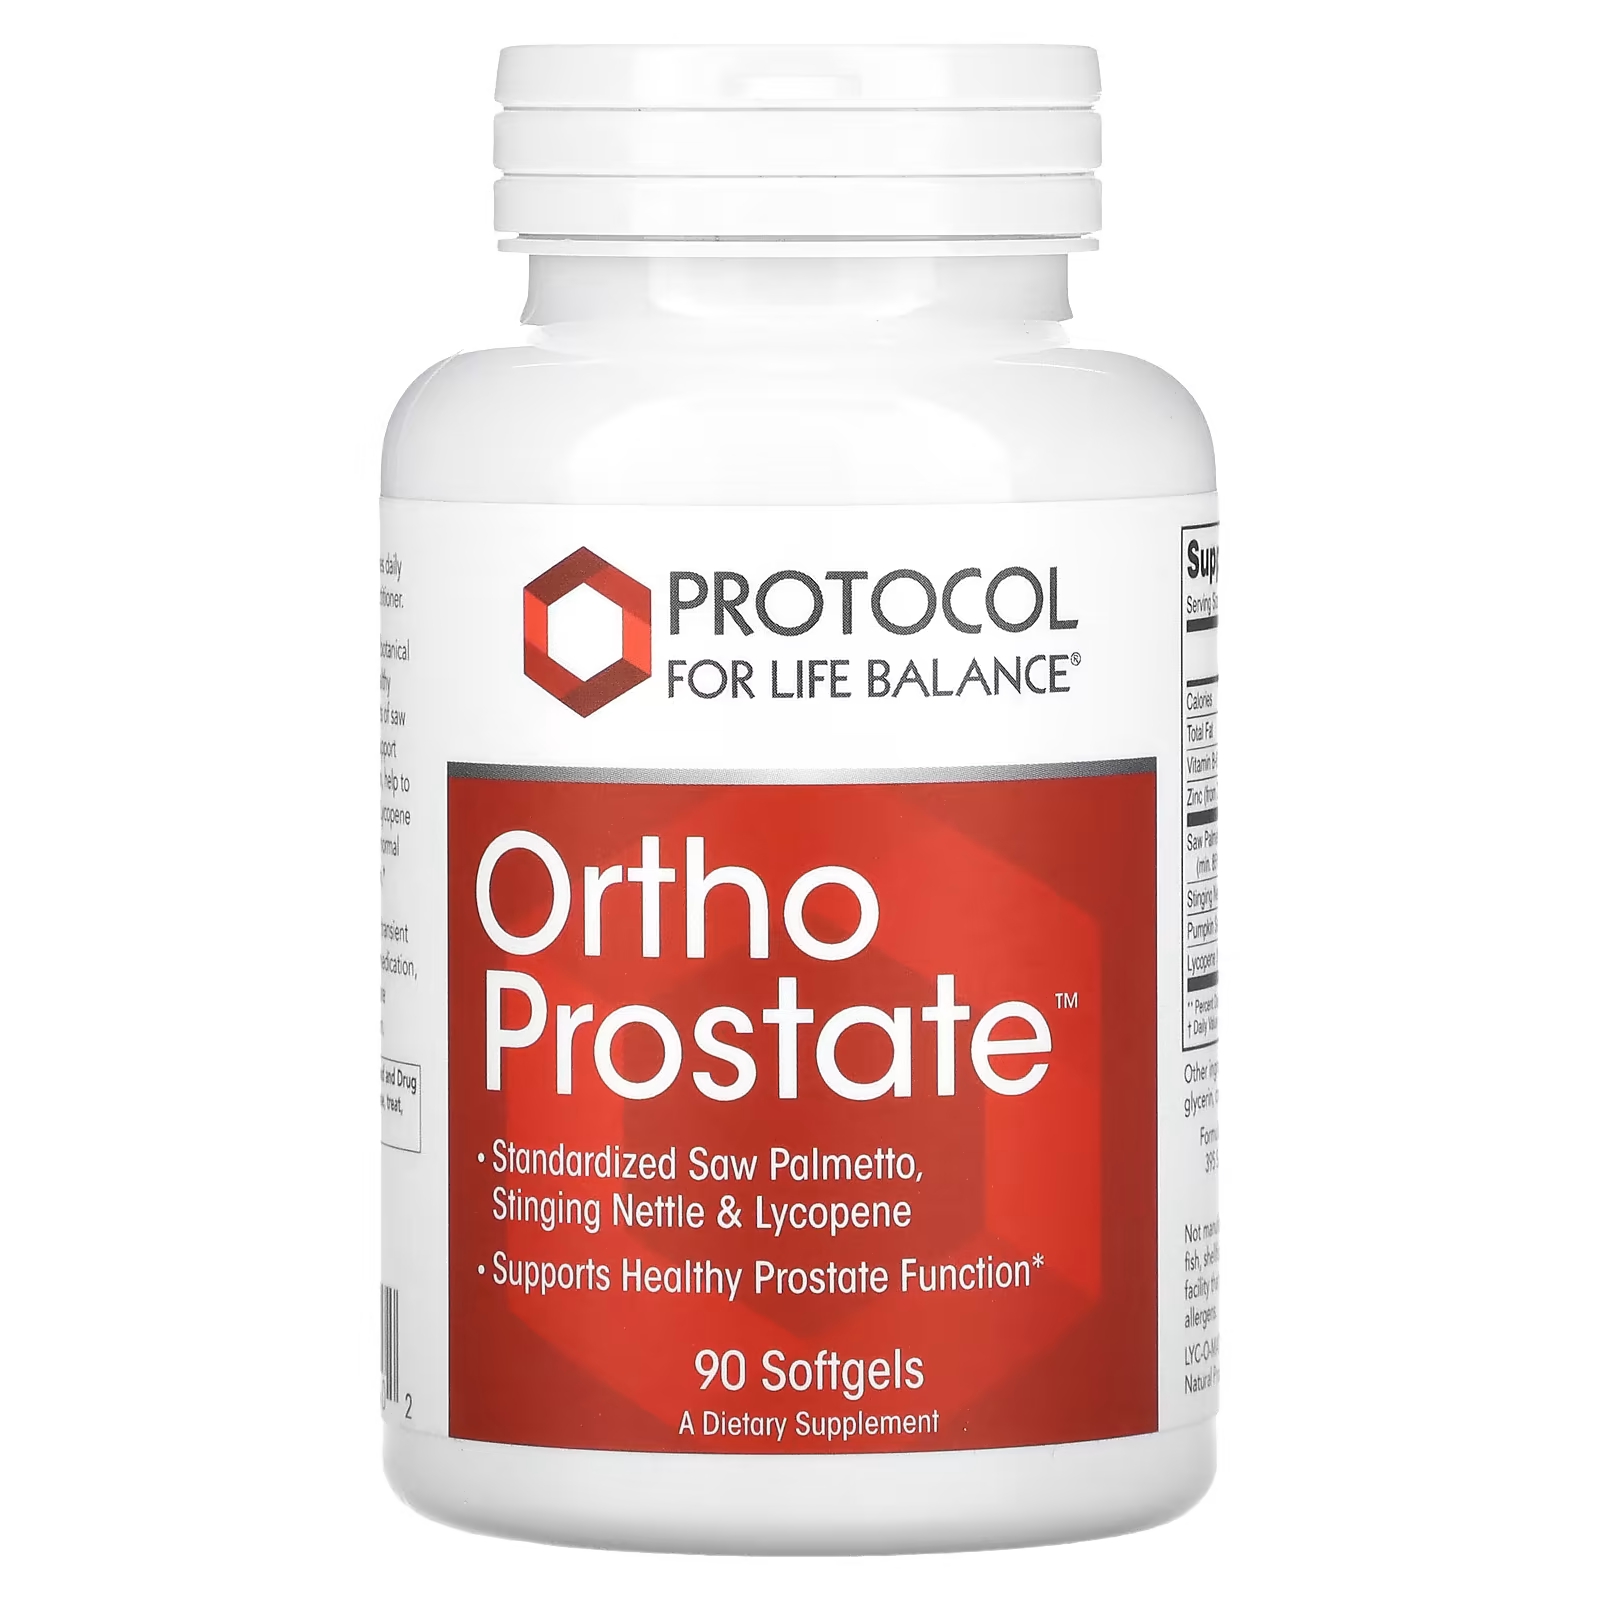 Протокол для Life Balance Ortho Prostate, 90 мягких таблеток Protocol for Life Balance protocol for life balance регулирование уровня глюкозы с помощью гидрохлорида берберина 90 мягких таблеток